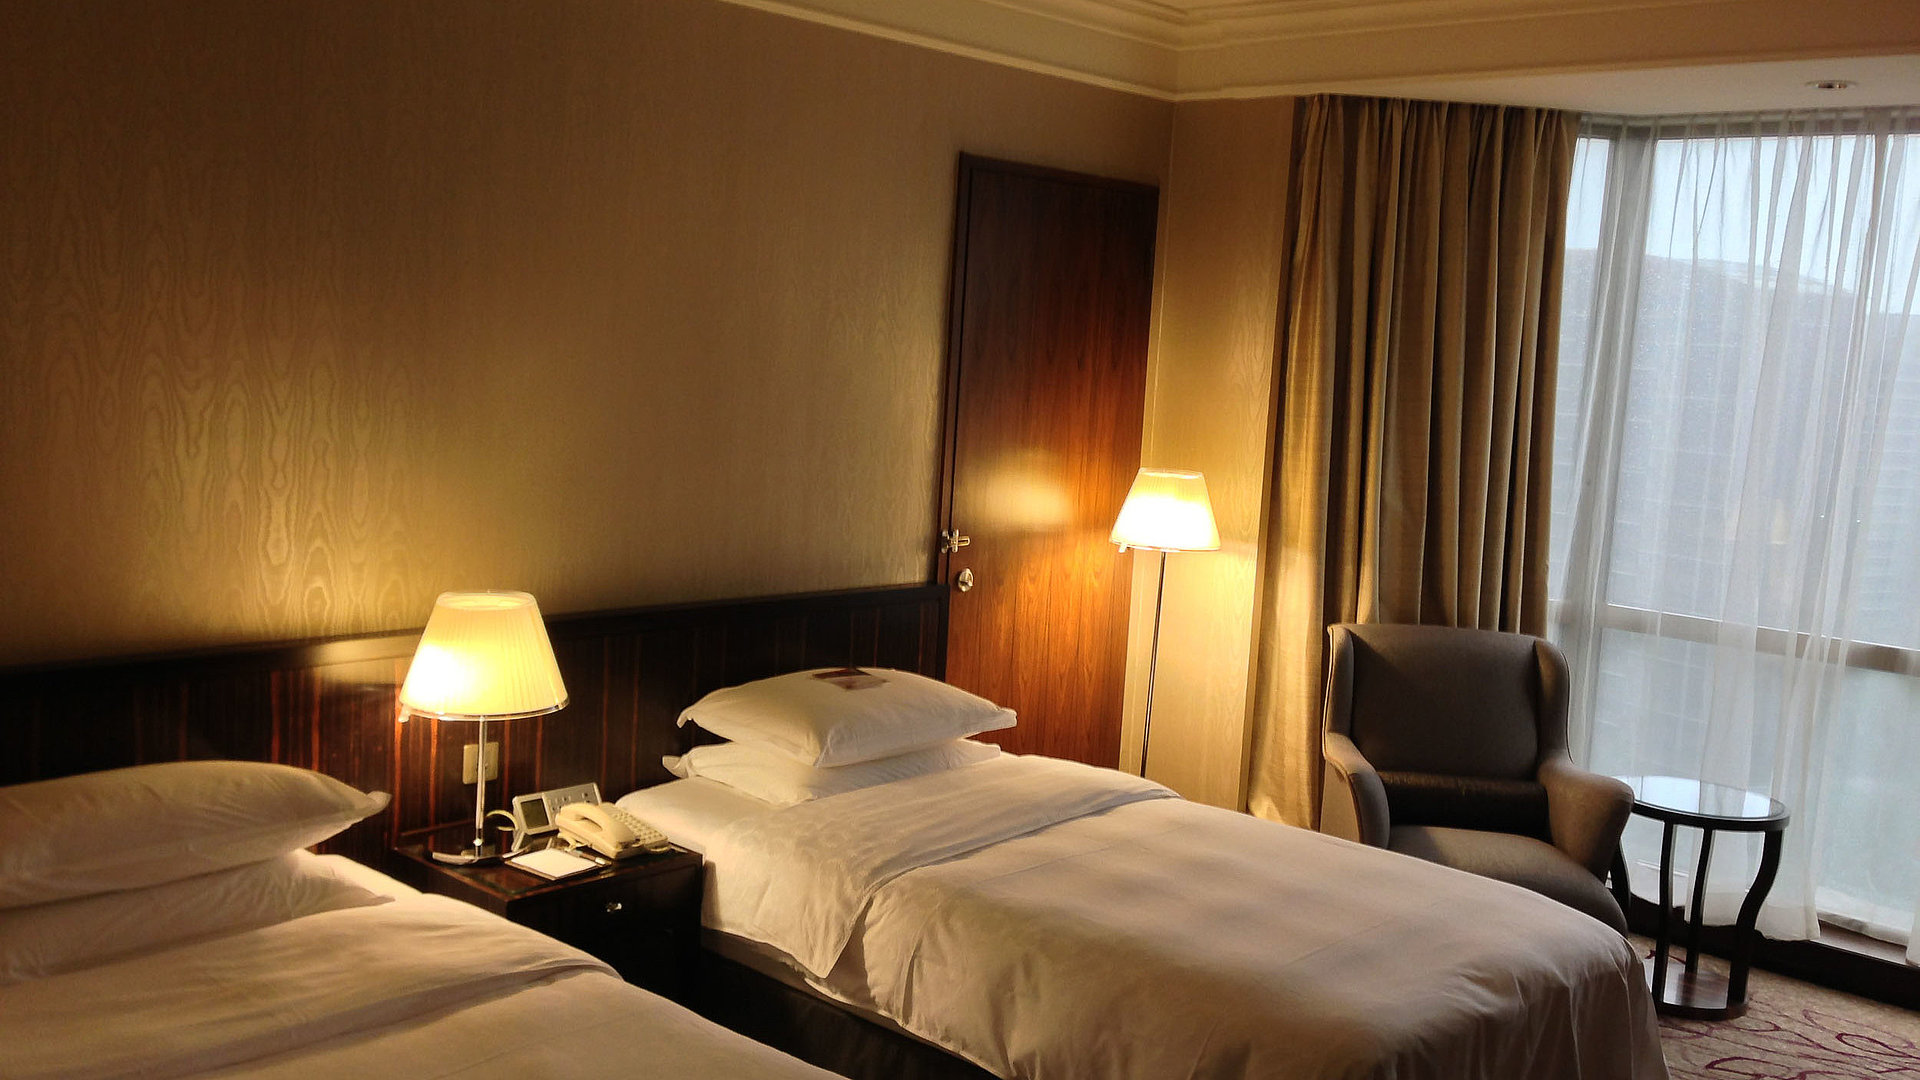 Hotels für Gruppen in Nürnberg - sehr ordentliches Hotelzimmer mit zwei Betten, warmer Nachtlampe und Gardinen